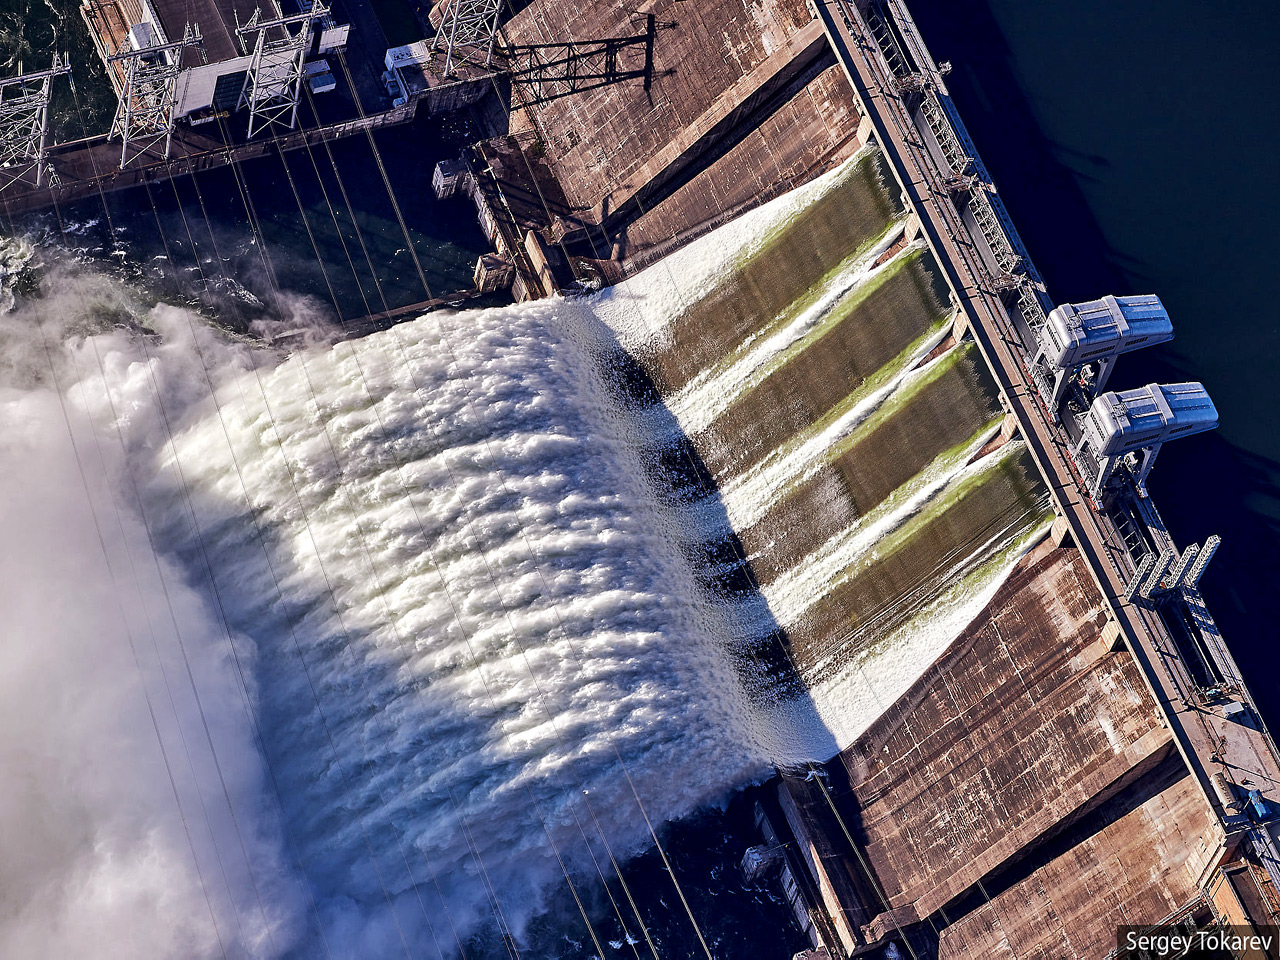 Сброс воды на ГЭС